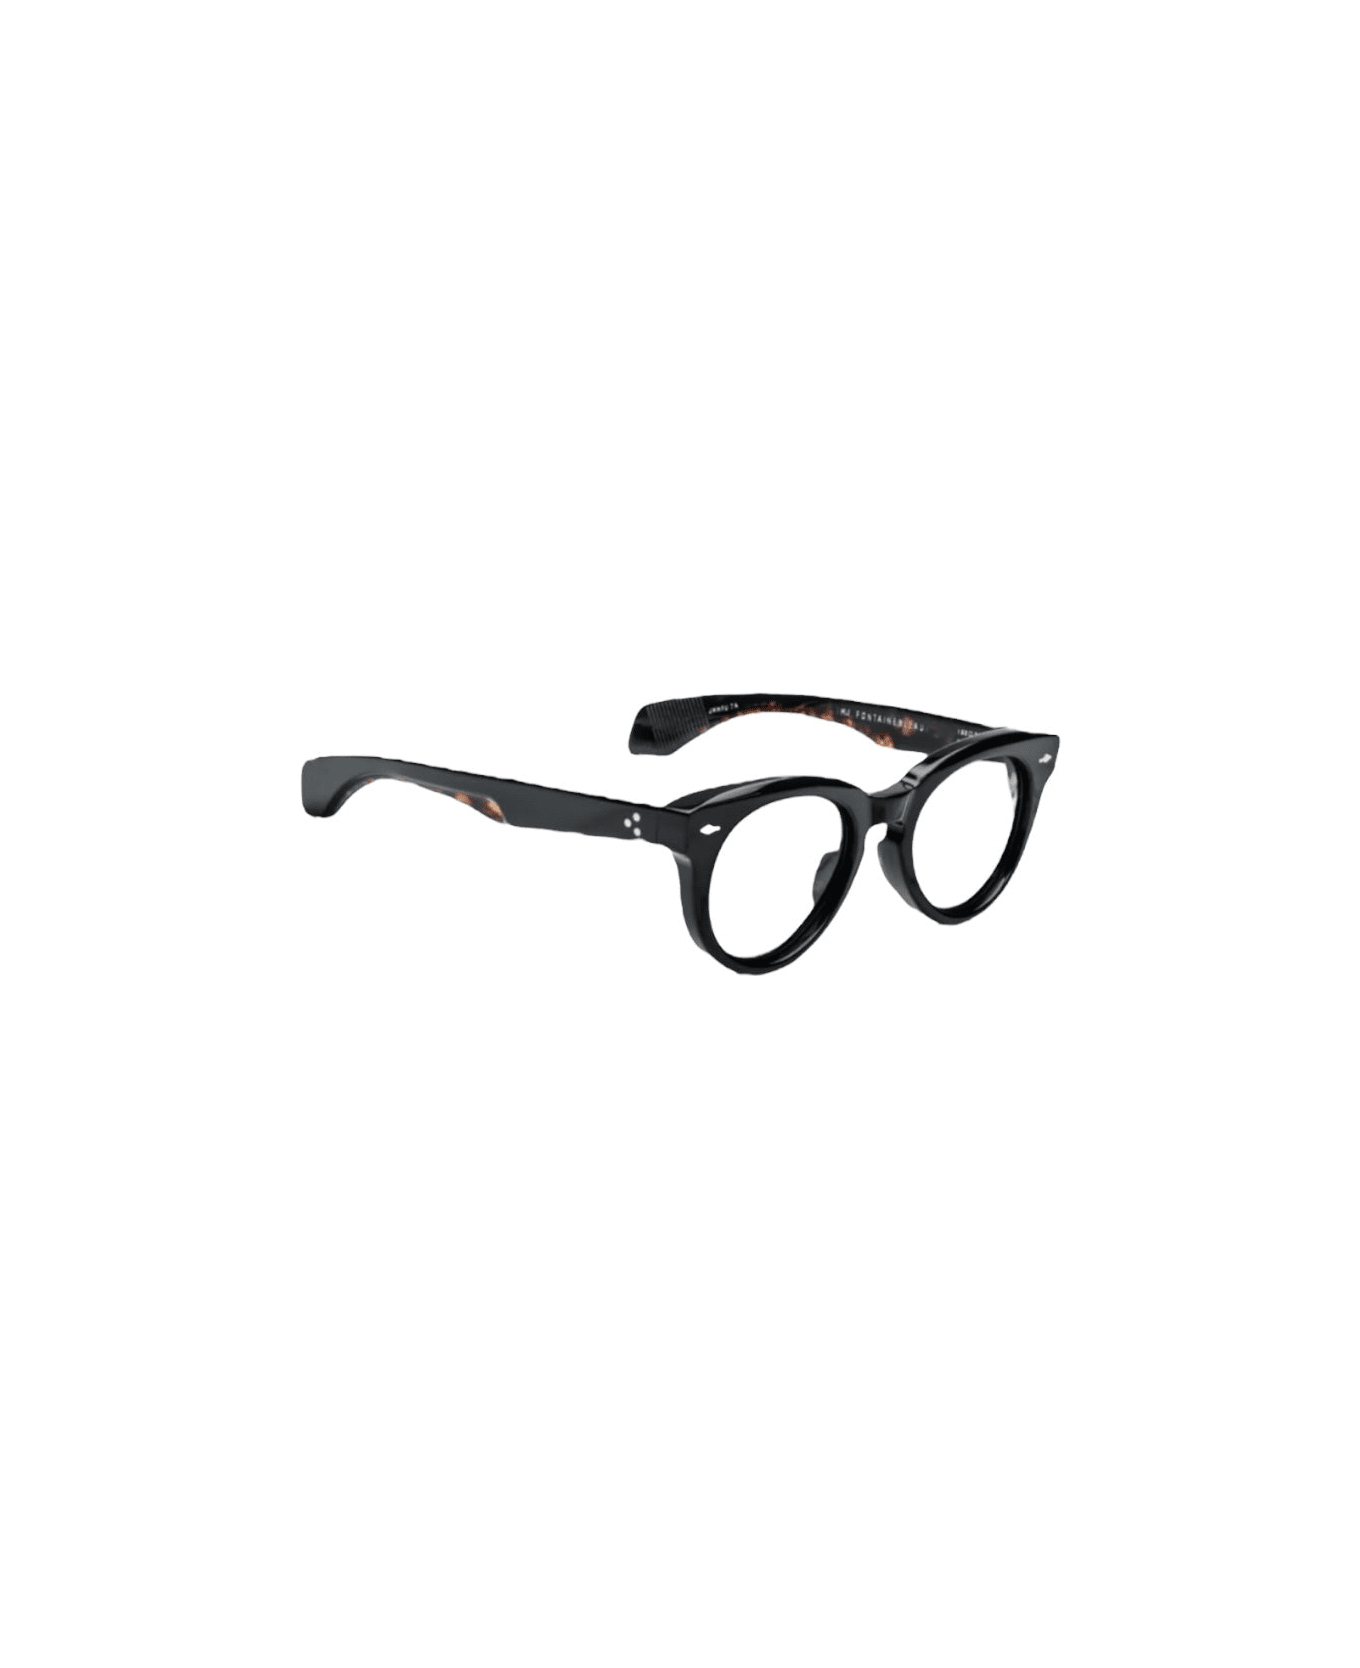 Jacques Marie Mage Fontainebleau - Noire 7 Rx Glasses